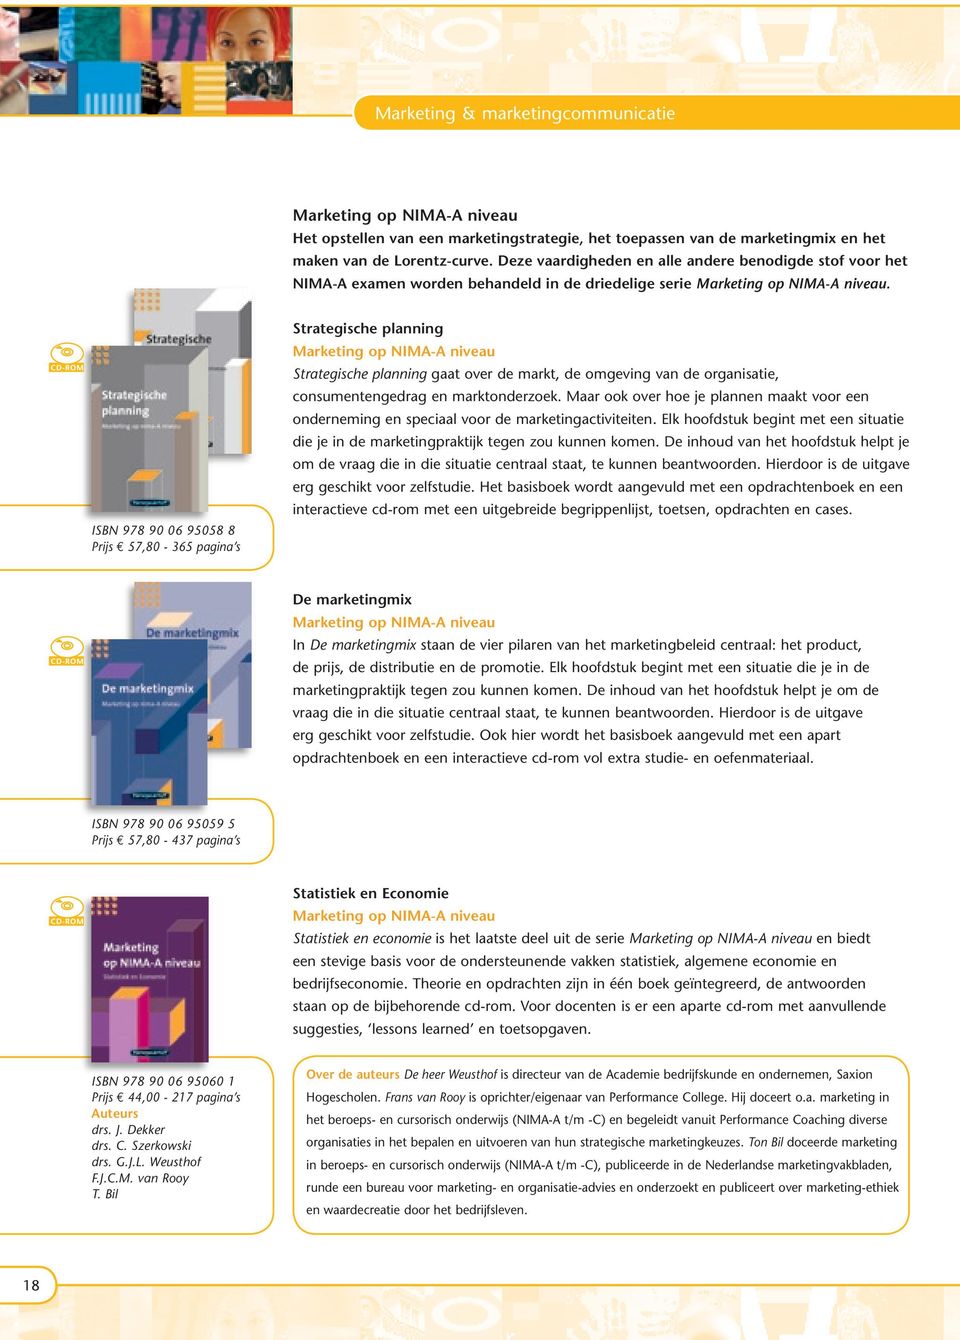 wizbone ISBN 978 90 06 95058 8 Prijs E 57,80-365 pagina s Strategische planning Marketing op NIMA-A niveau Strategische planning gaat over de markt, de omgeving van de organisatie, consumentengedrag